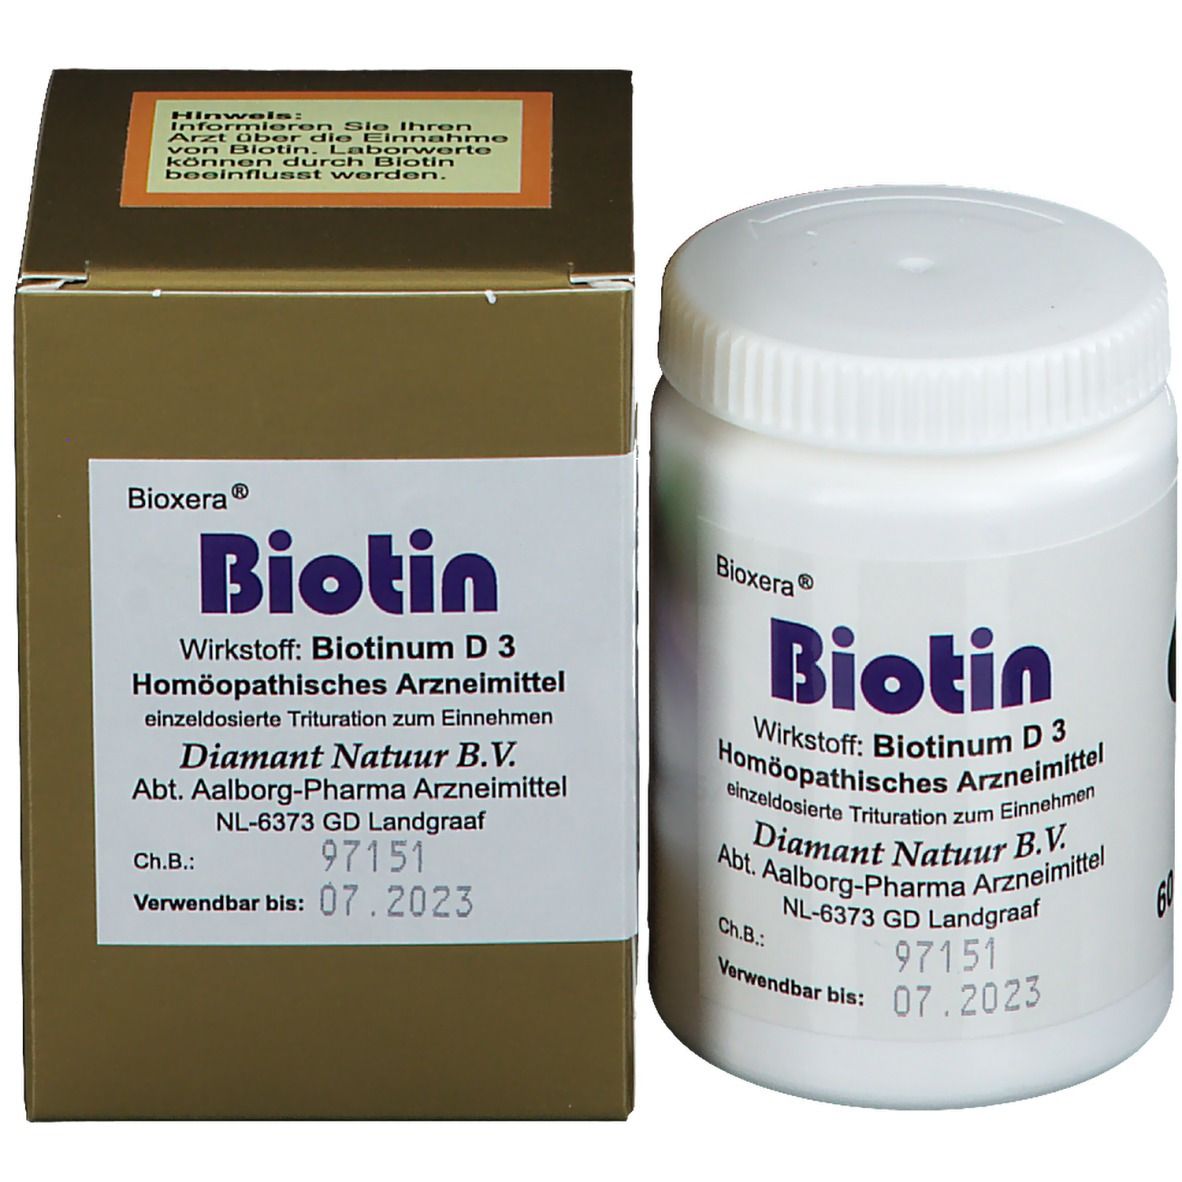 Bioxera® Biotin